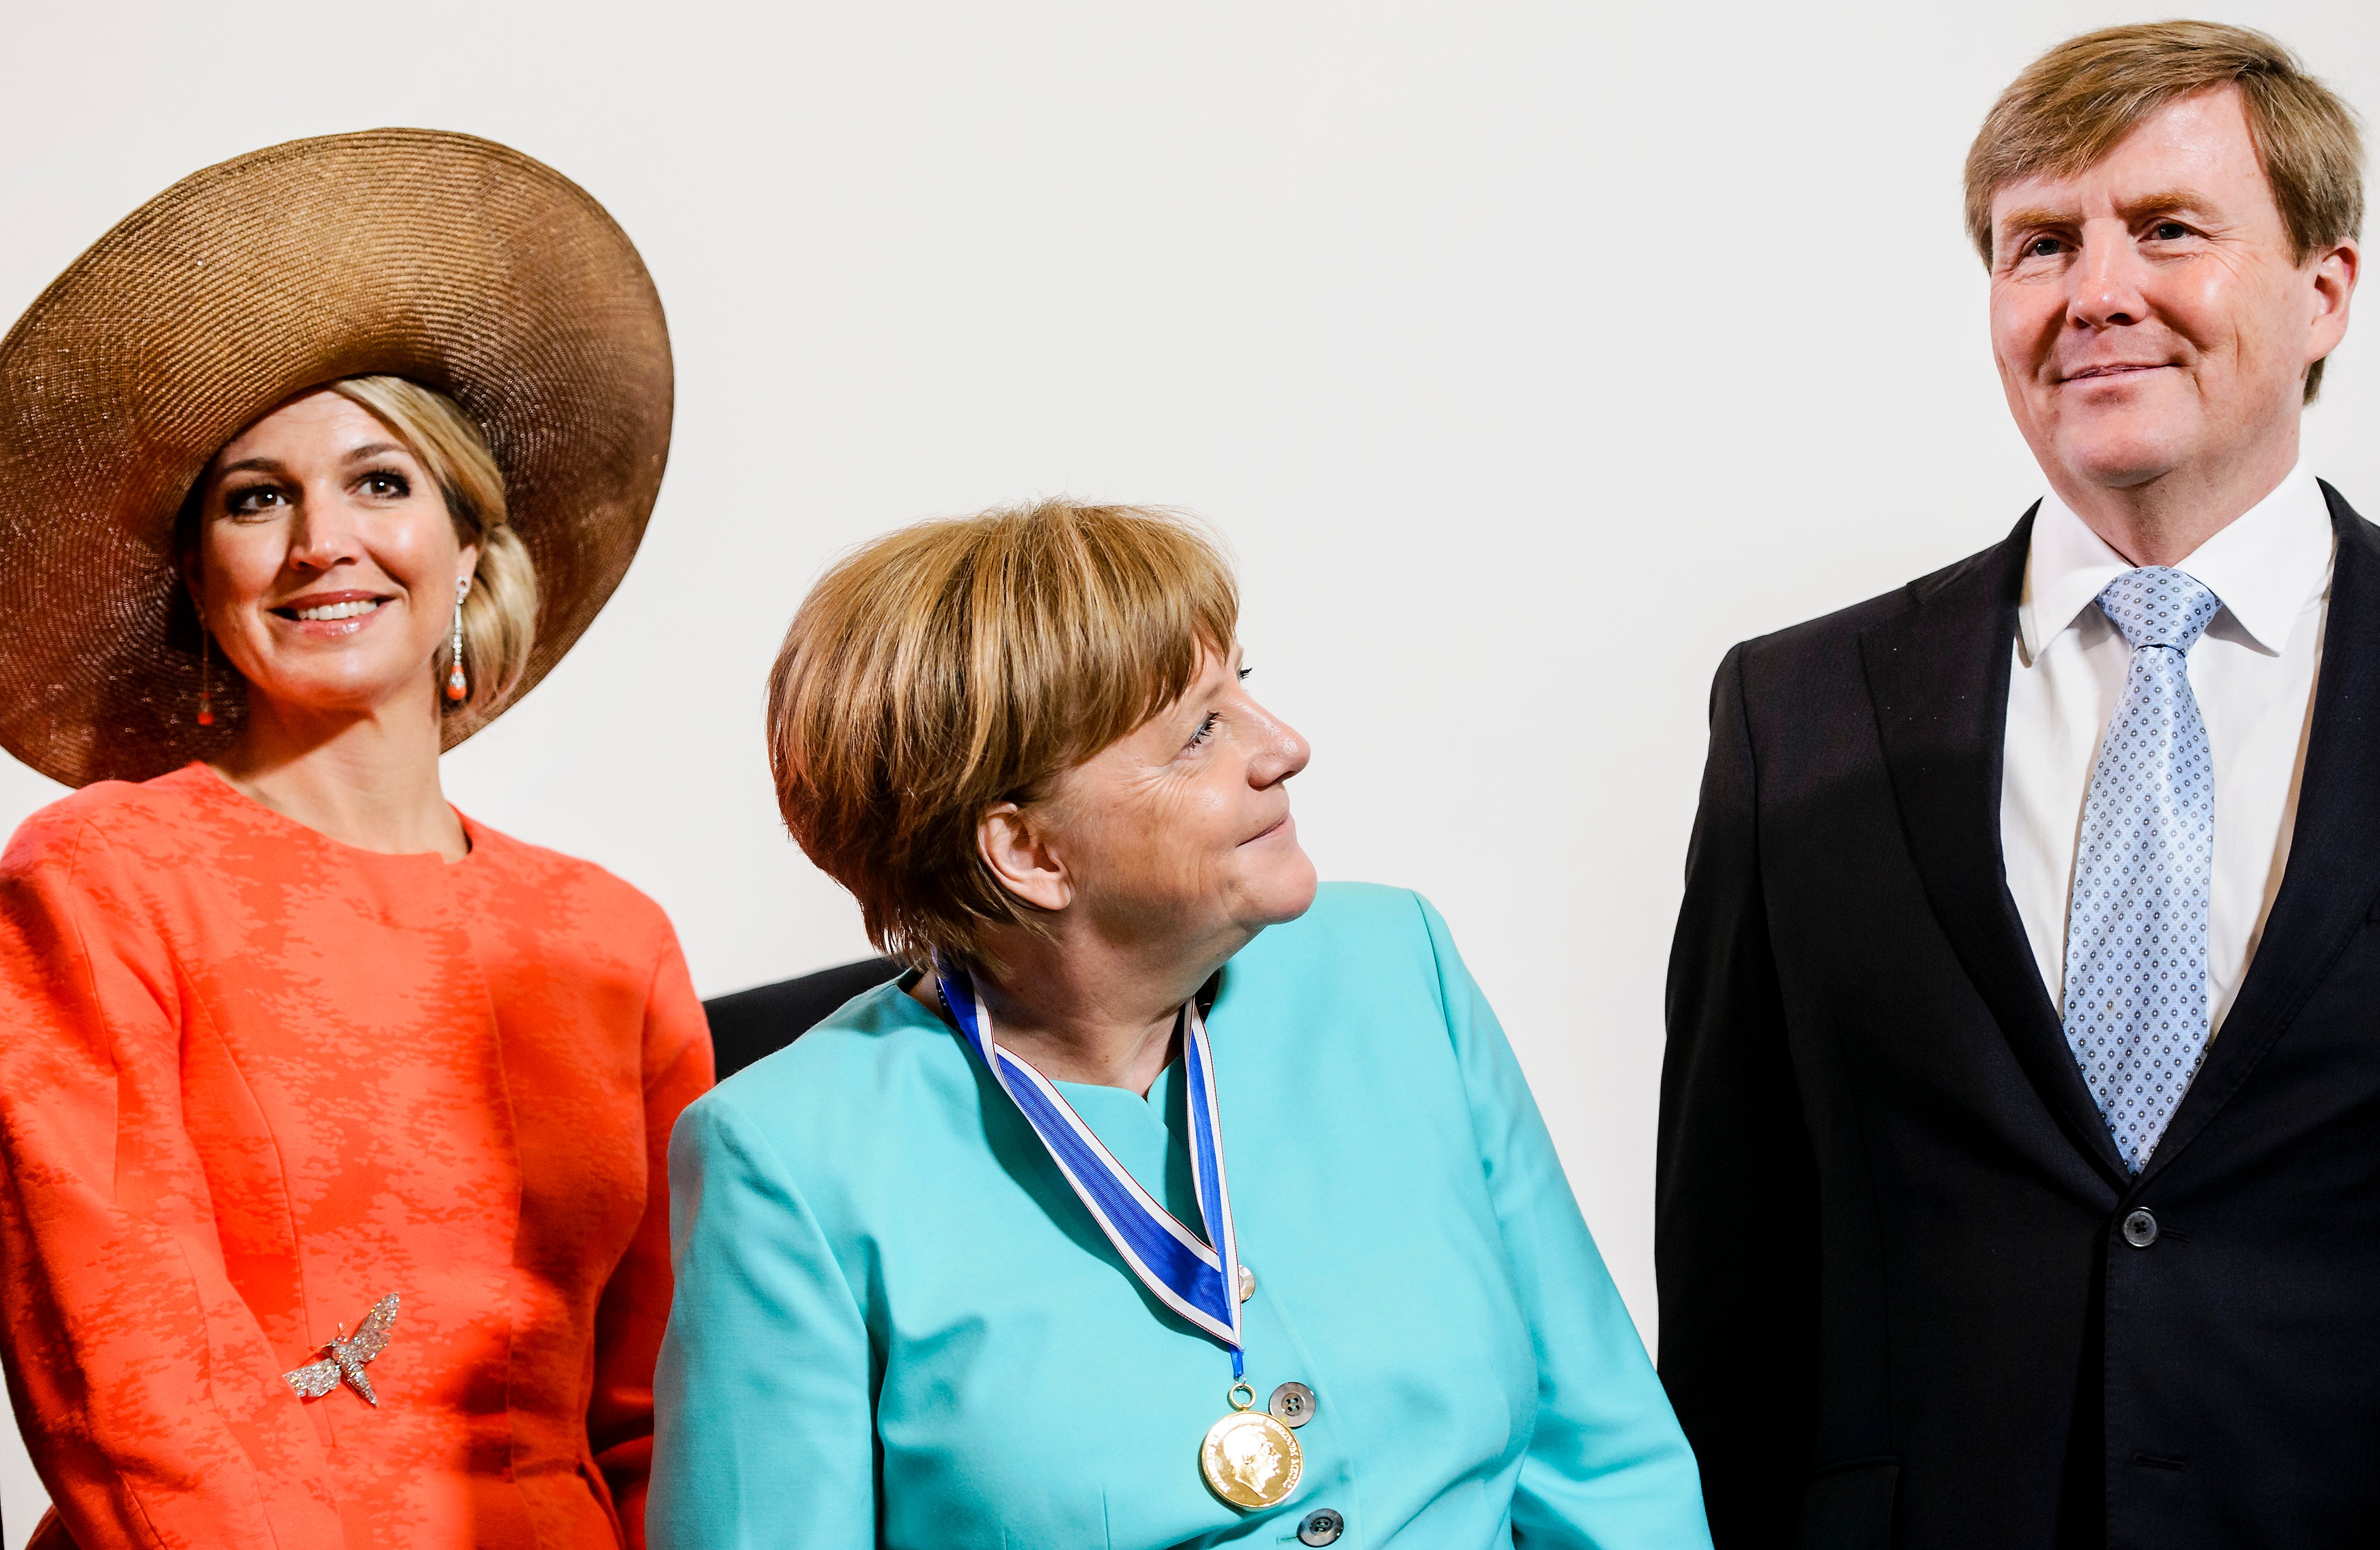 2016-04-21 12:16:20 MIDDELBURG - Angela Merkel poseert samen met Koningin Maxima en Koning Willem-Alexander voor een groepsfoto na afloop van de uitreiking van de Four Freedoms Awards 2016. ANP ROYAL IMAGES REMKO DE WAAL